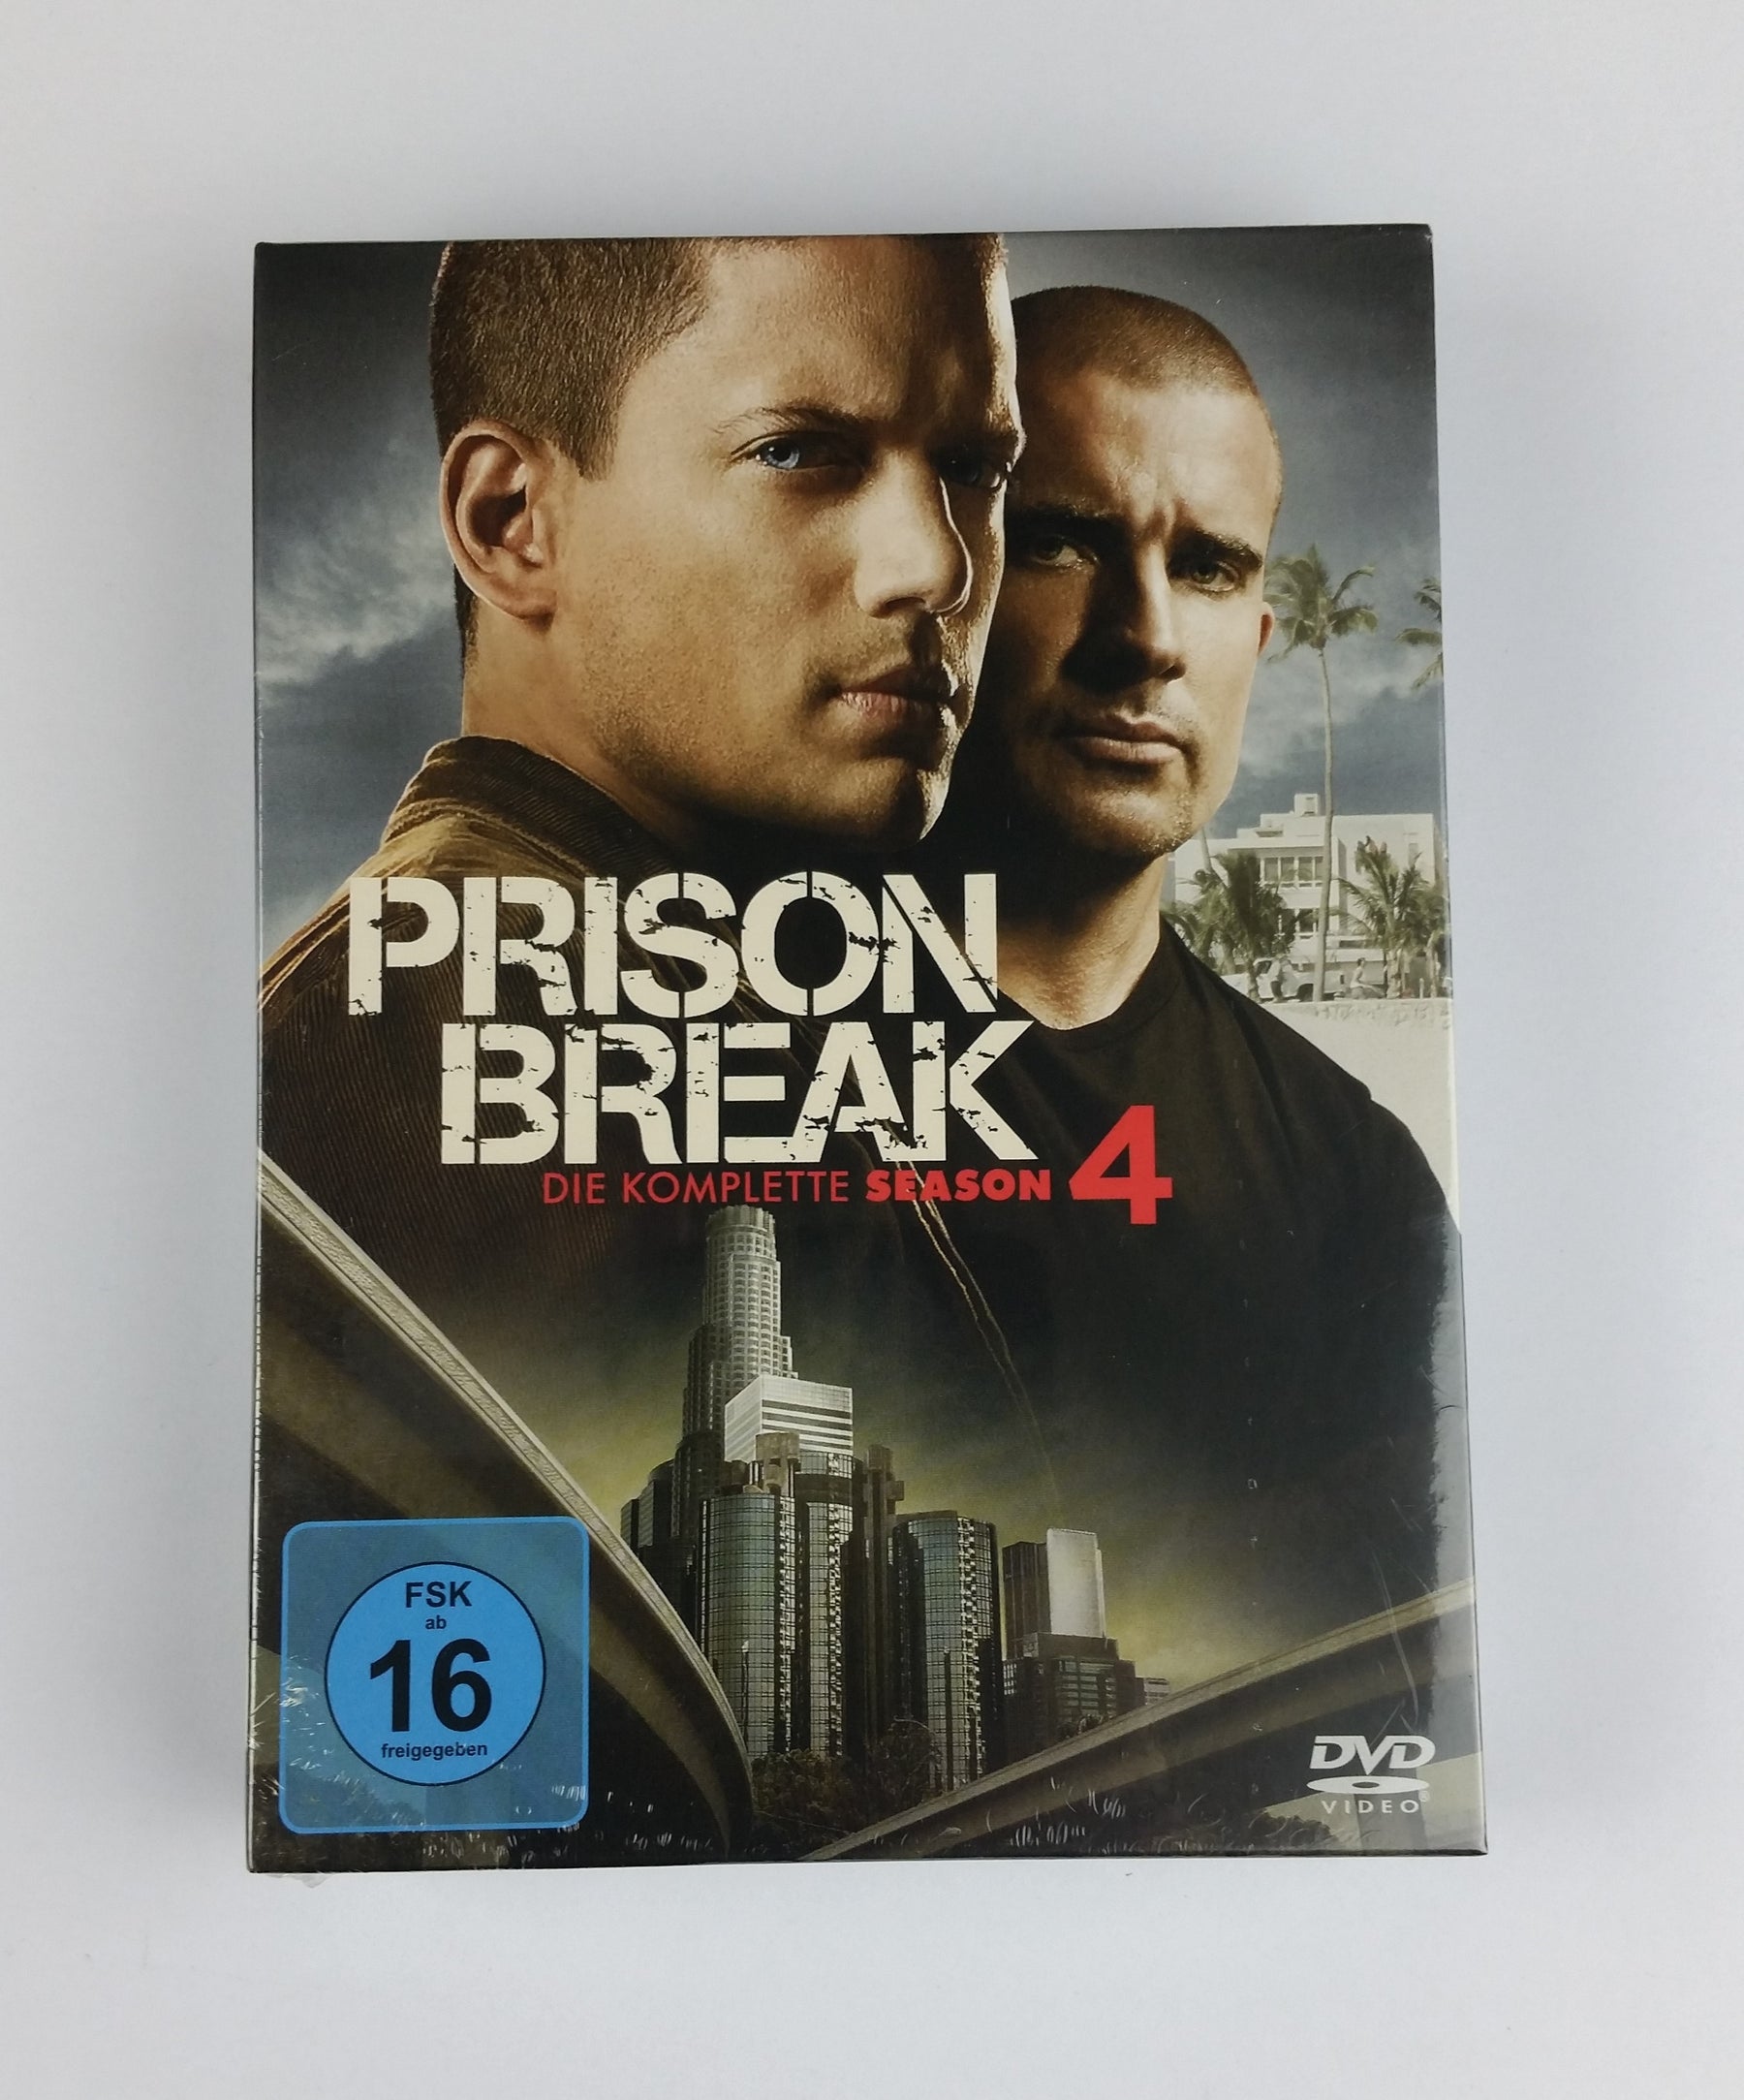 Prison Break Die komplette Season 4 DVD [Neu]